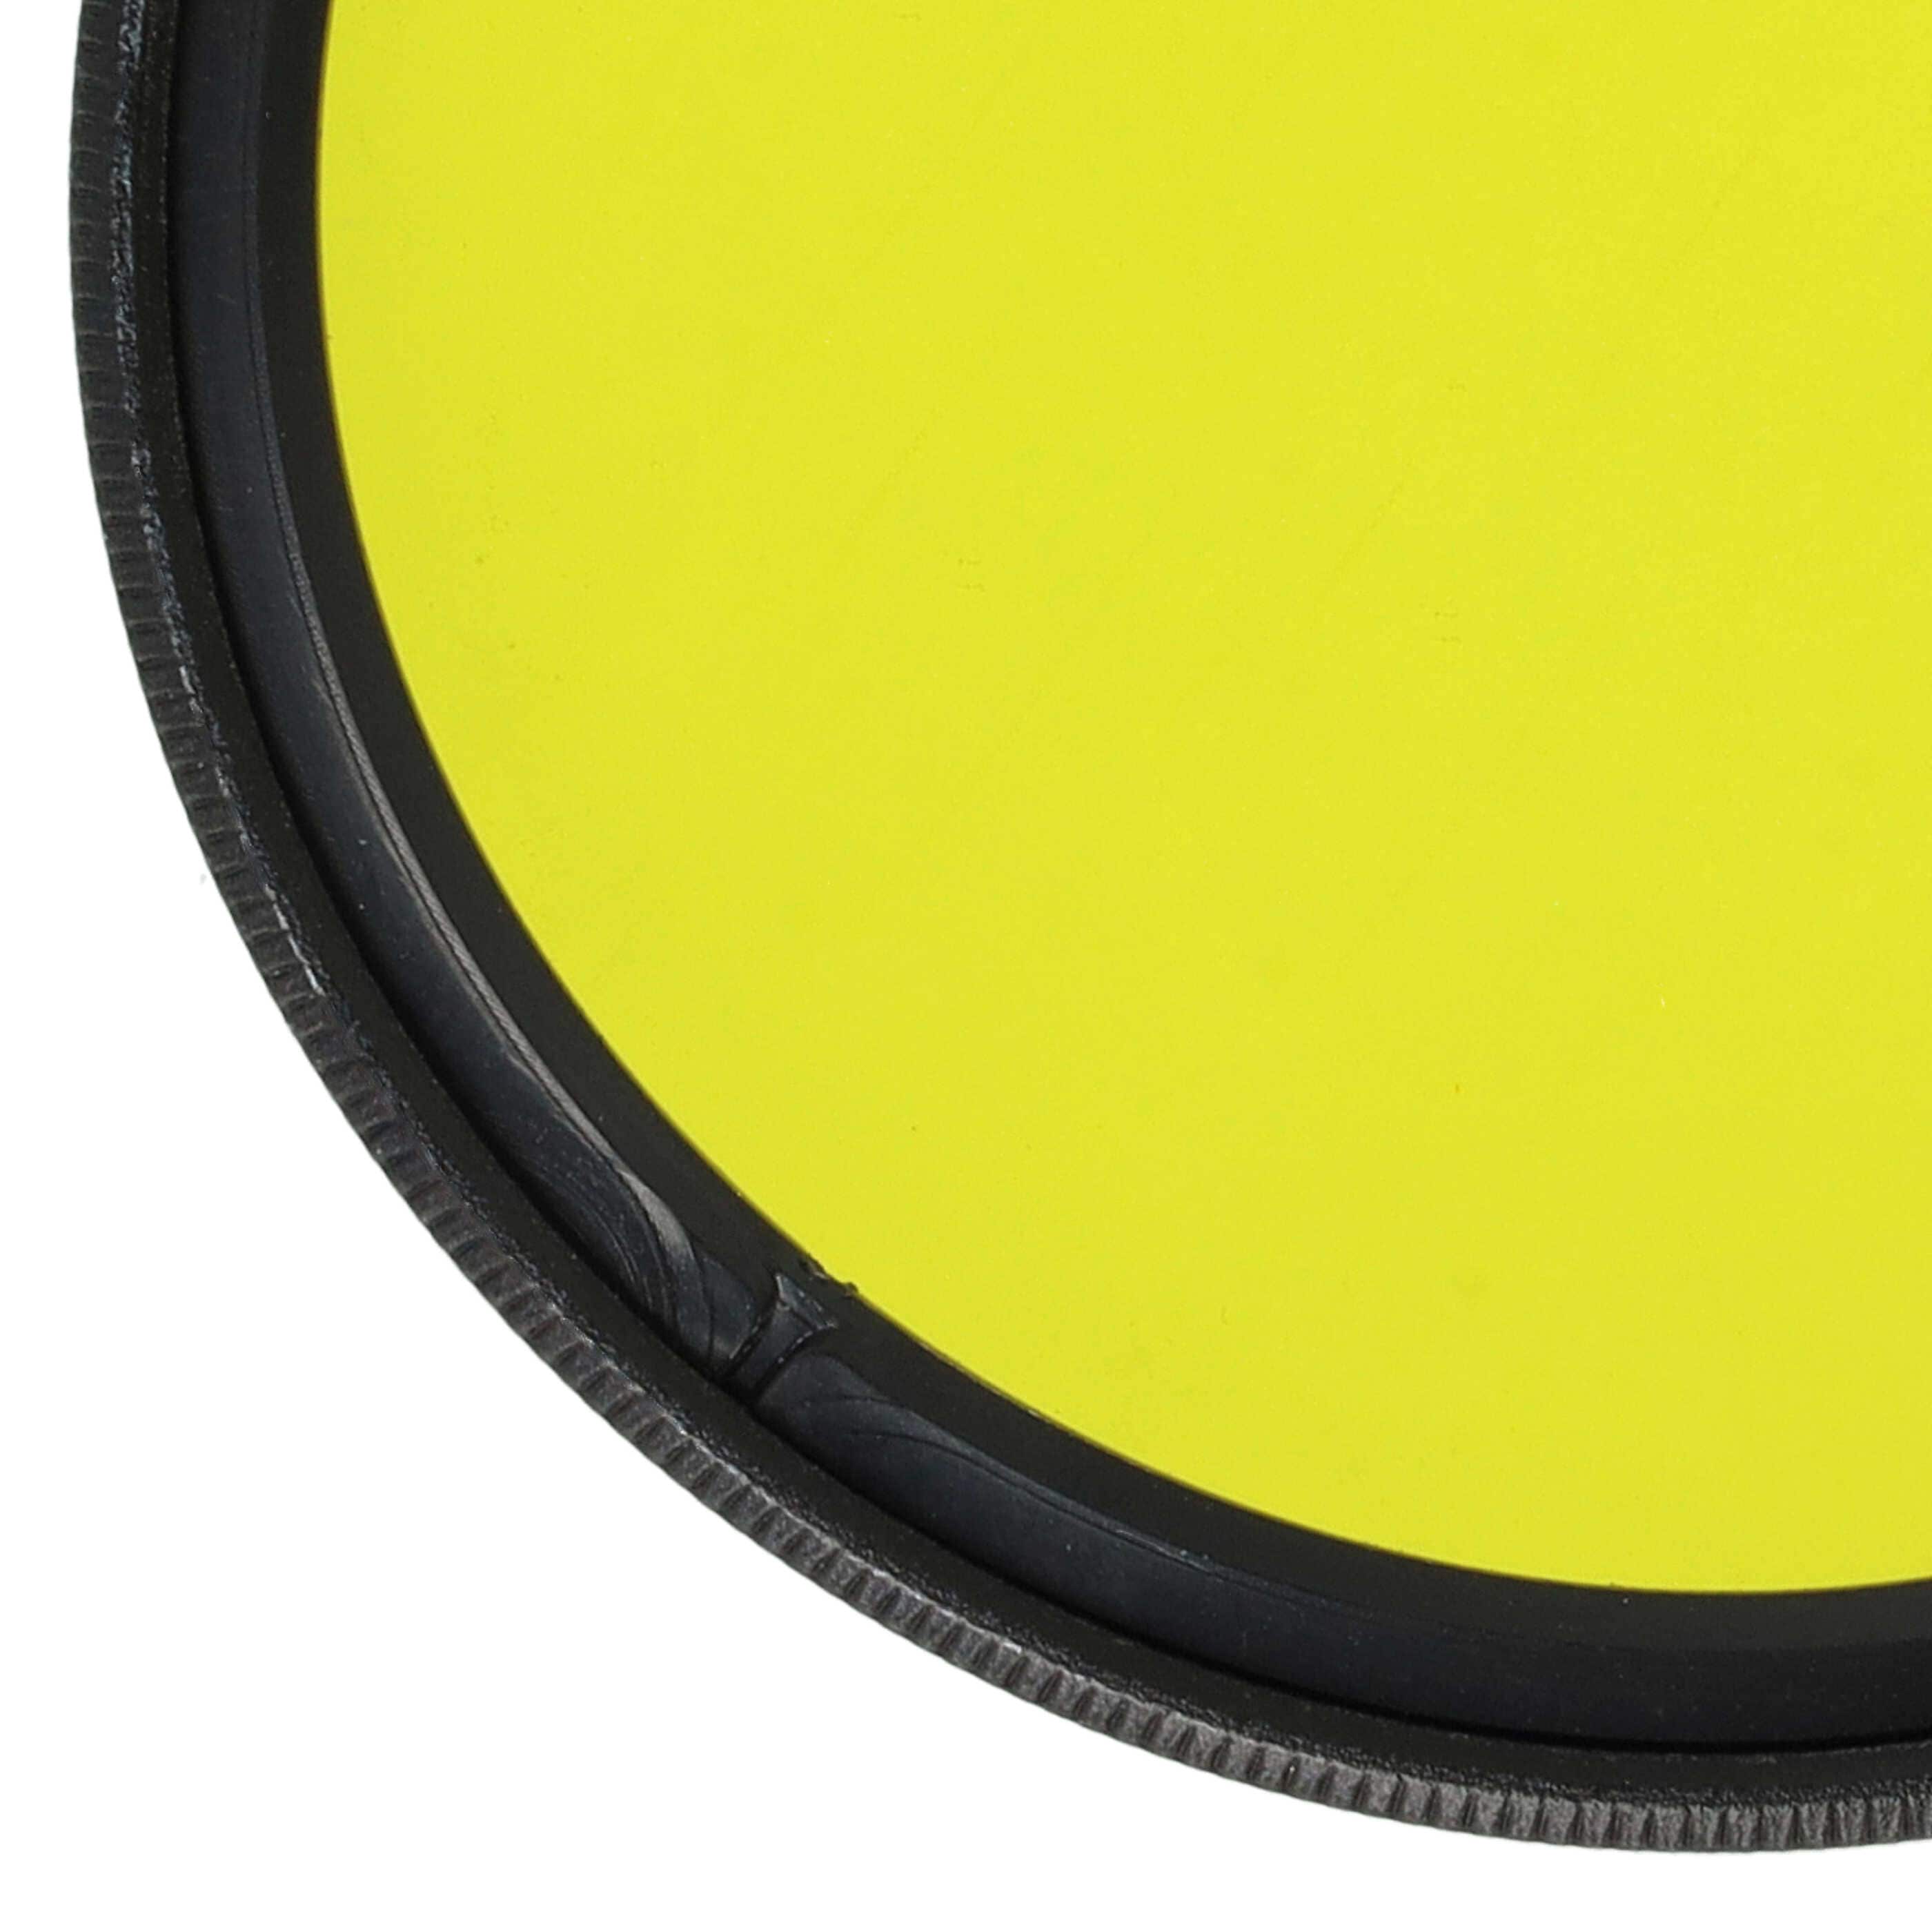 Filtro colorato per obiettivi fotocamera con filettatura da 52 mm - filtro giallo